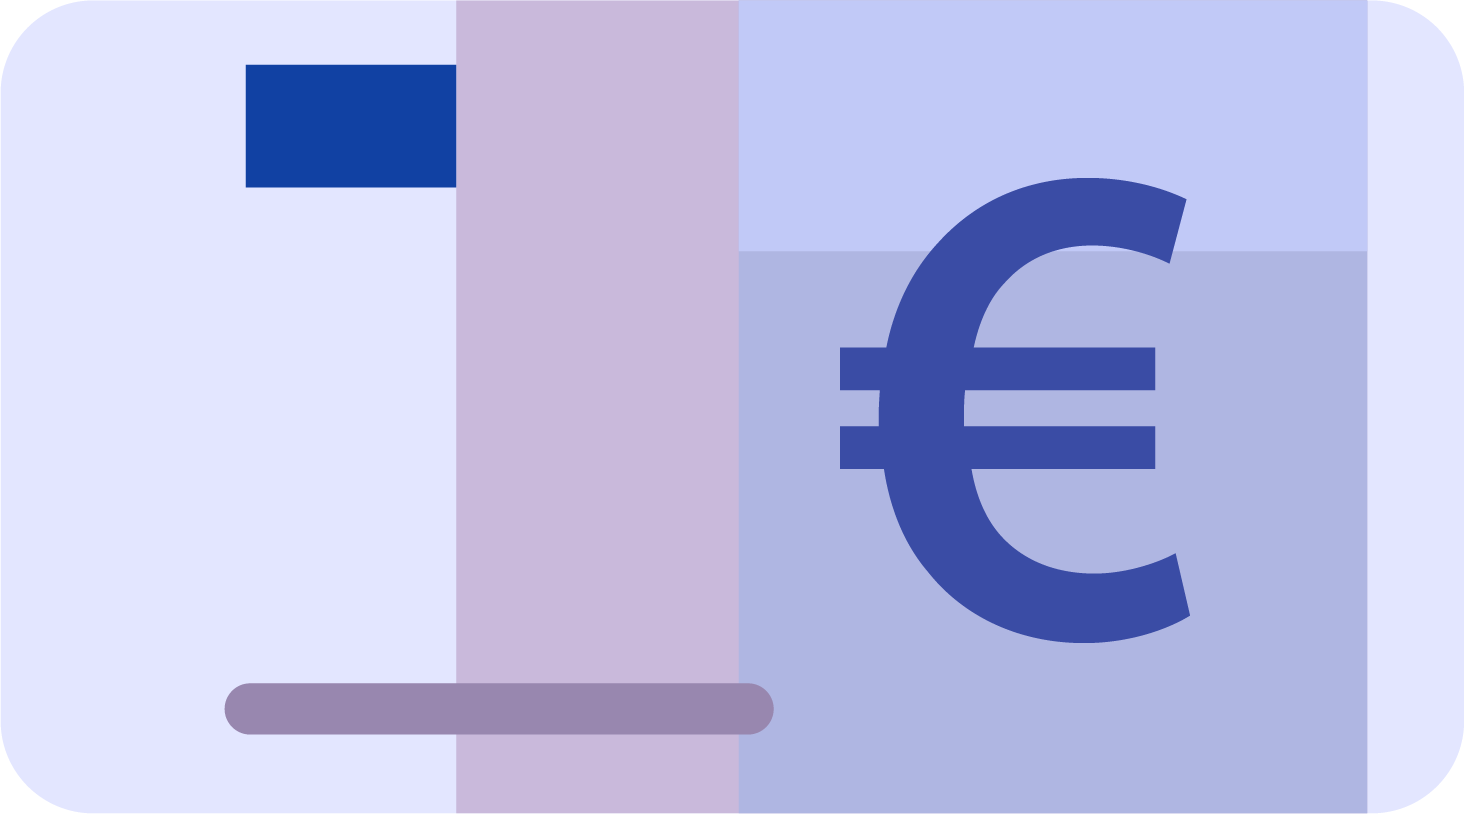 Euro Cash